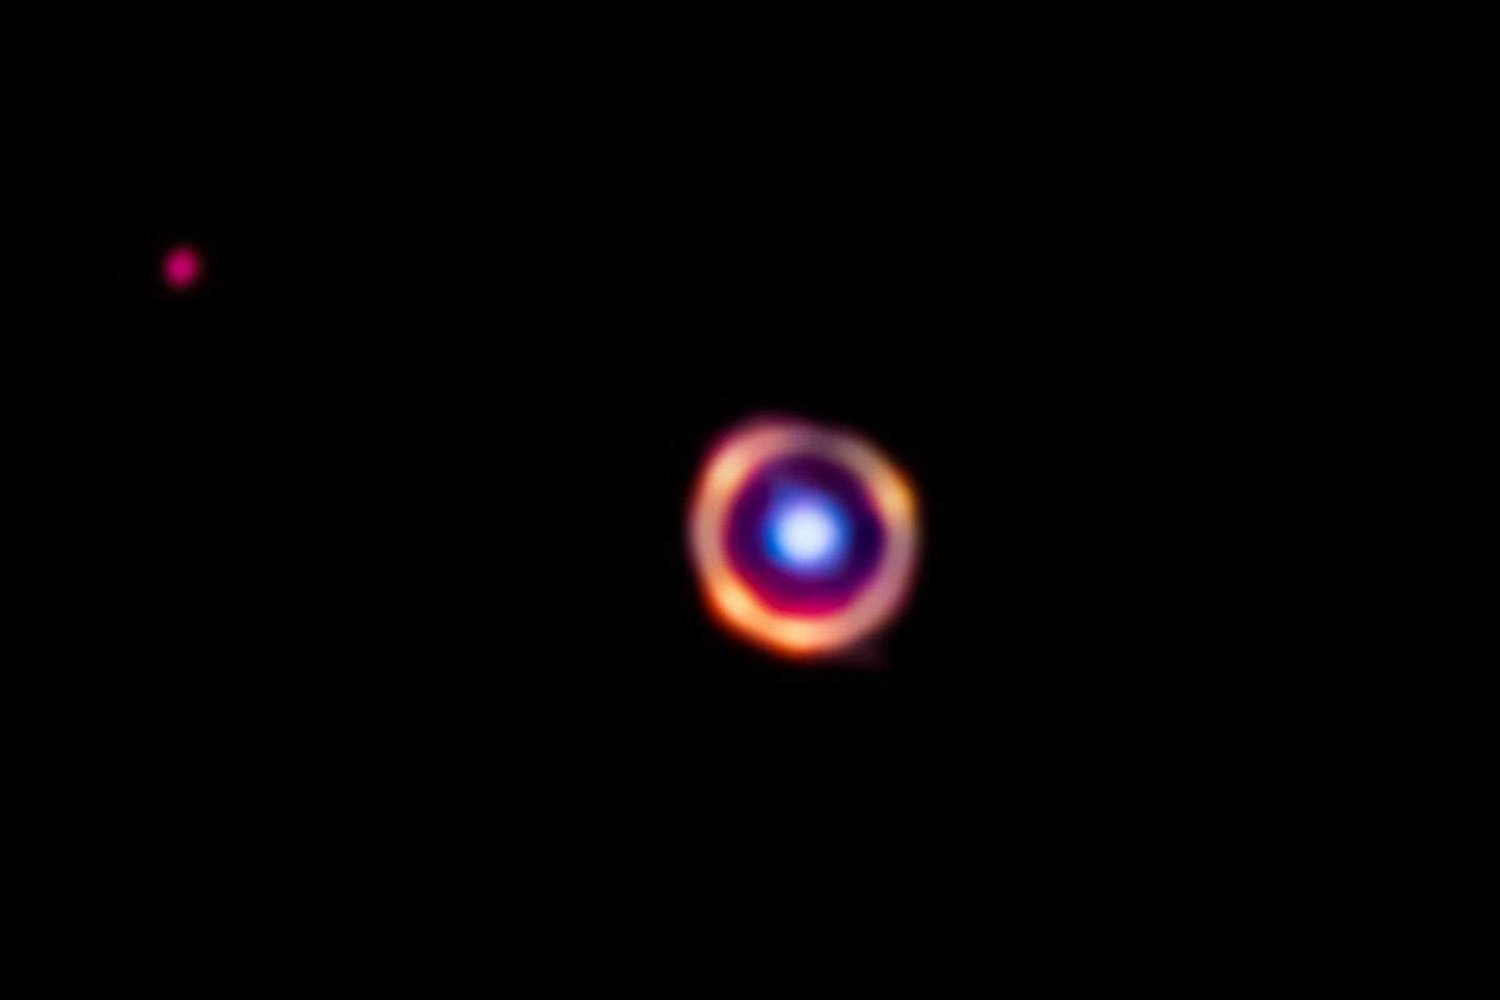 صورة تلسكوب «جيمس ويب» لمجرة «SPT0418 - 47» باللون الأحمر... وتم تمييز الجزيئات العضوية باللون البرتقالي بينما توجد مجرة أمامها باللون الأزرق (ناسا)